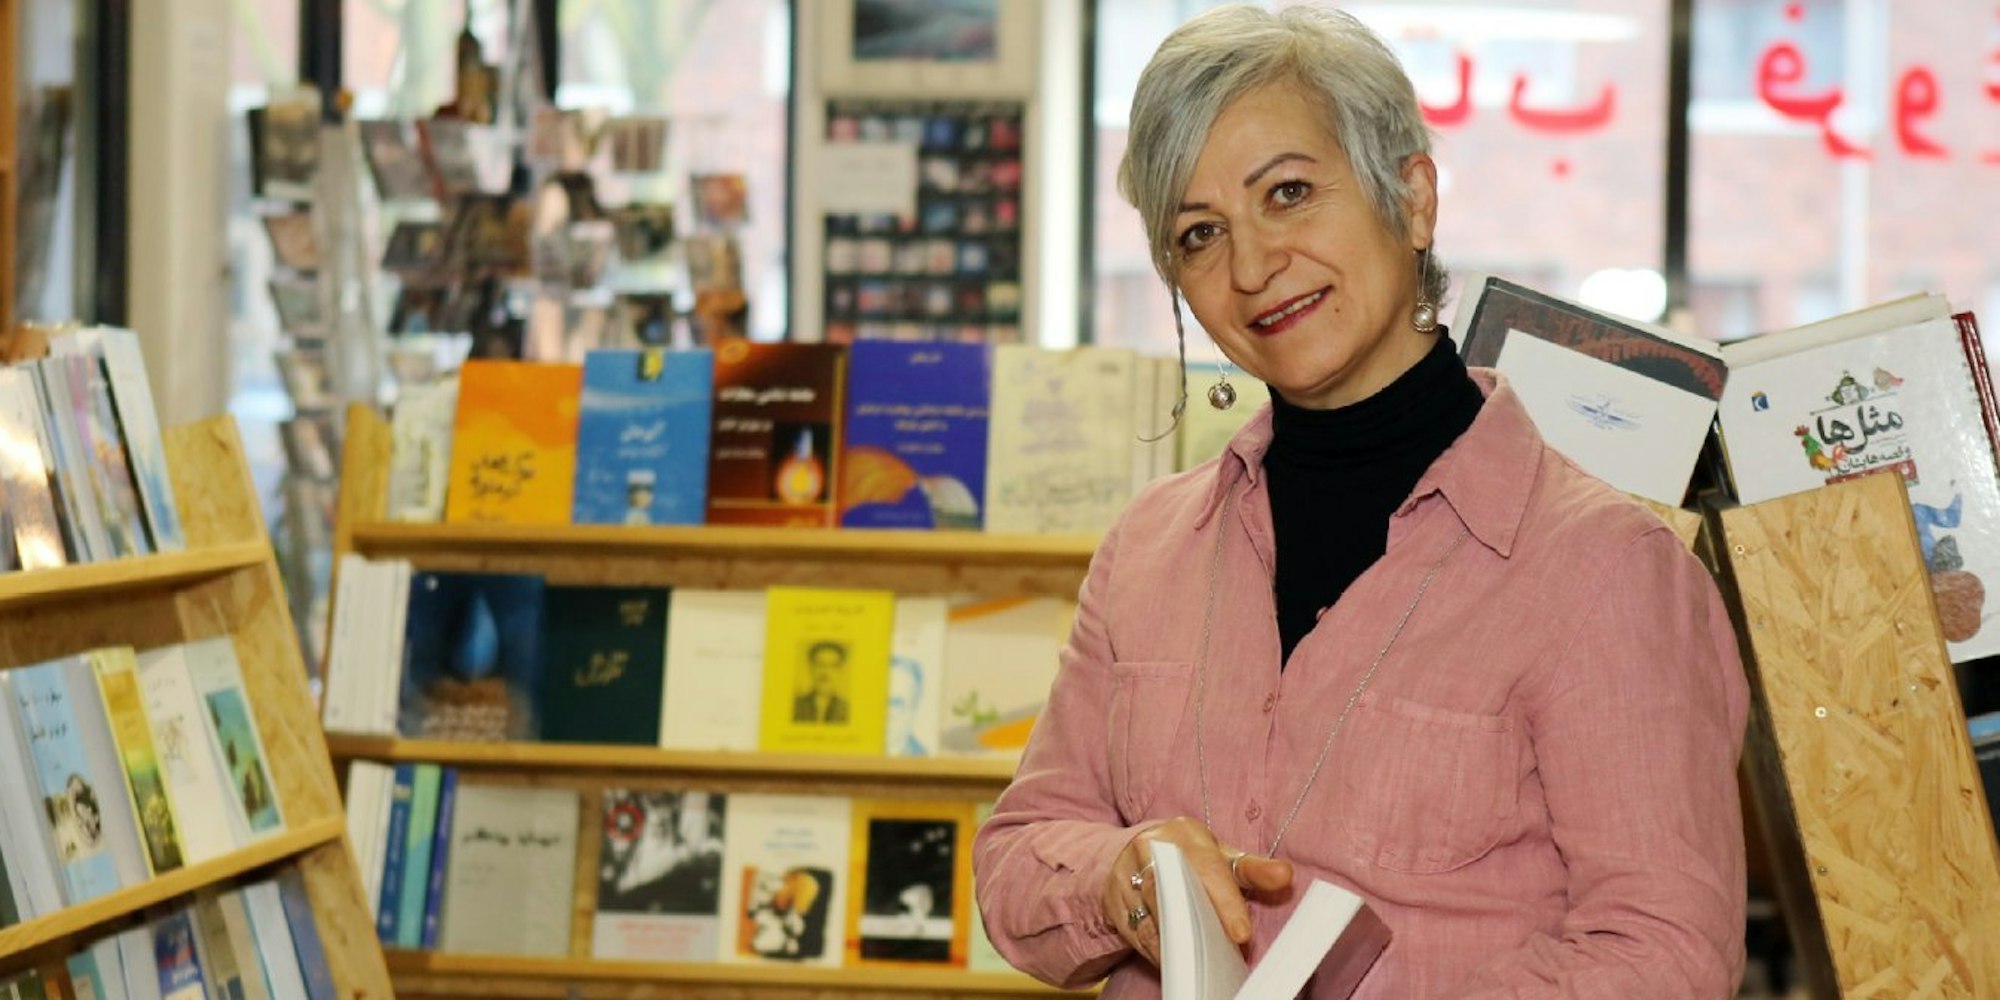 Die Buchhandlung Forough in der Jahnstraße ist ein Treffpunkt iranischer Intellektueller. Soheila Bahadori trifft man dort oft.